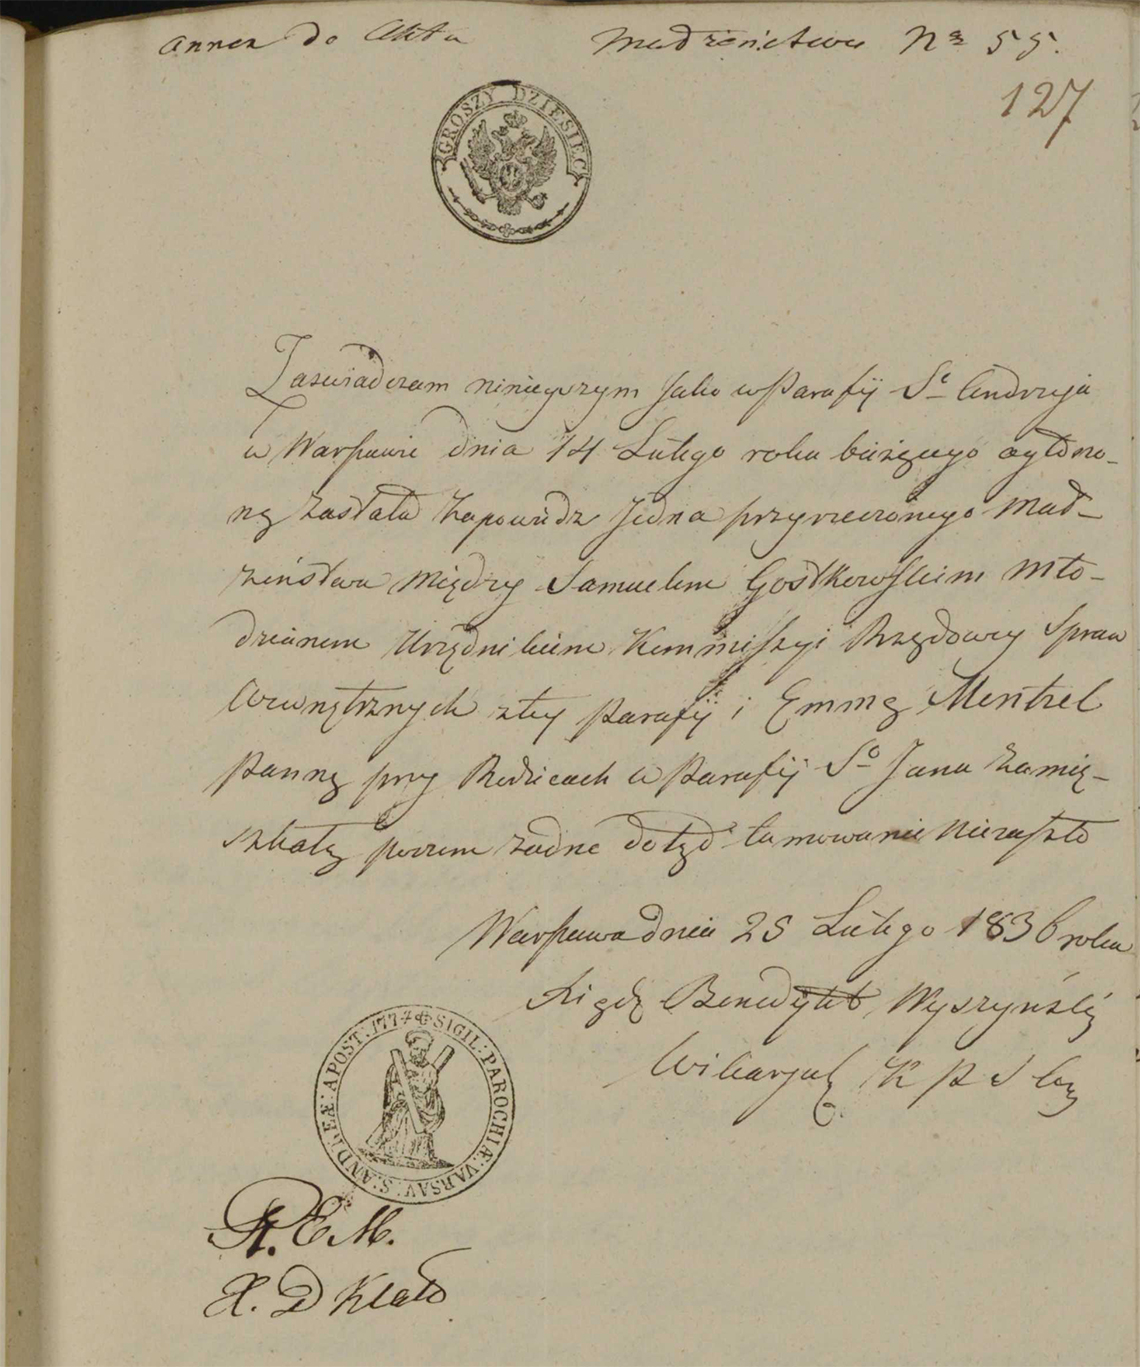 Aneksy do aktu małżeństwa Samuel Gostkowski & Emma Mentzel w dniu 04.04.1836 r. (aneks 2)